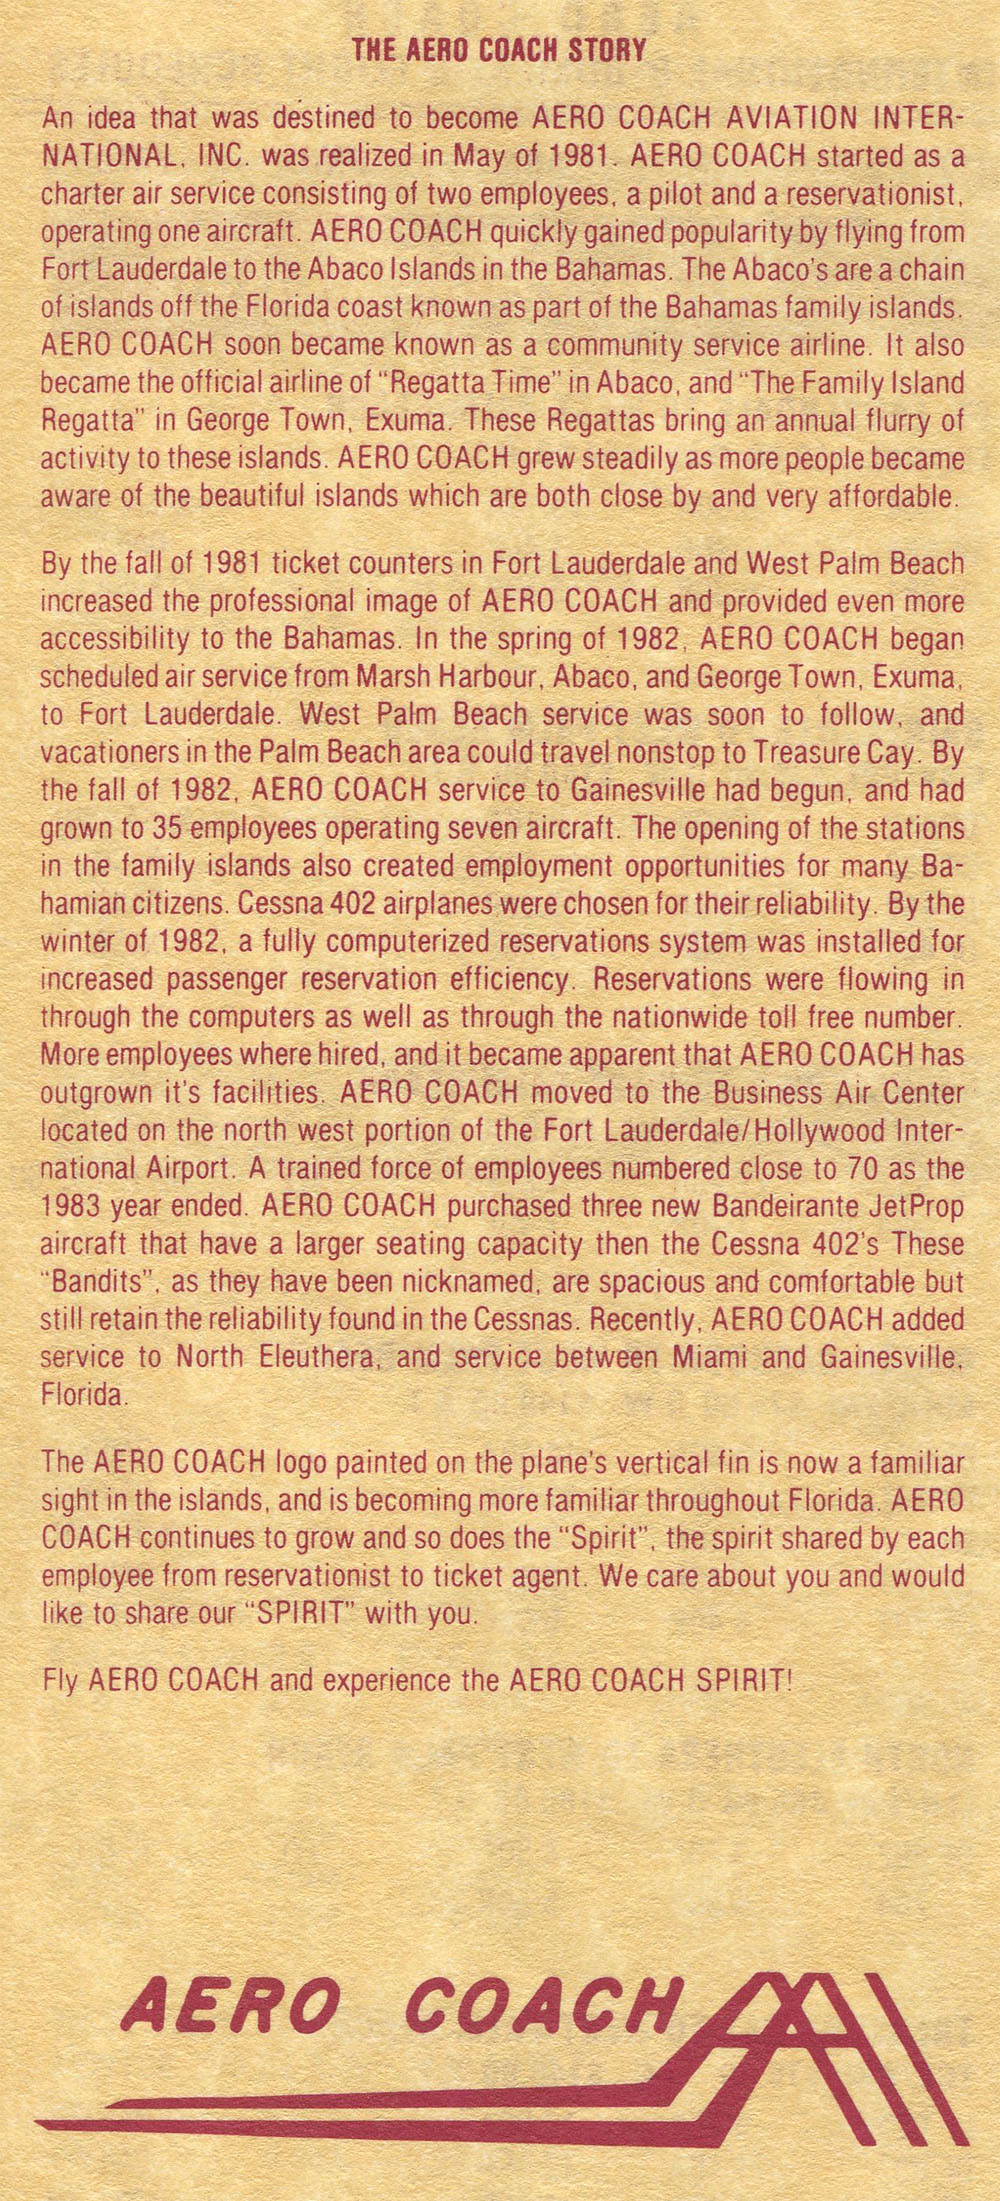 The Aero Coach story